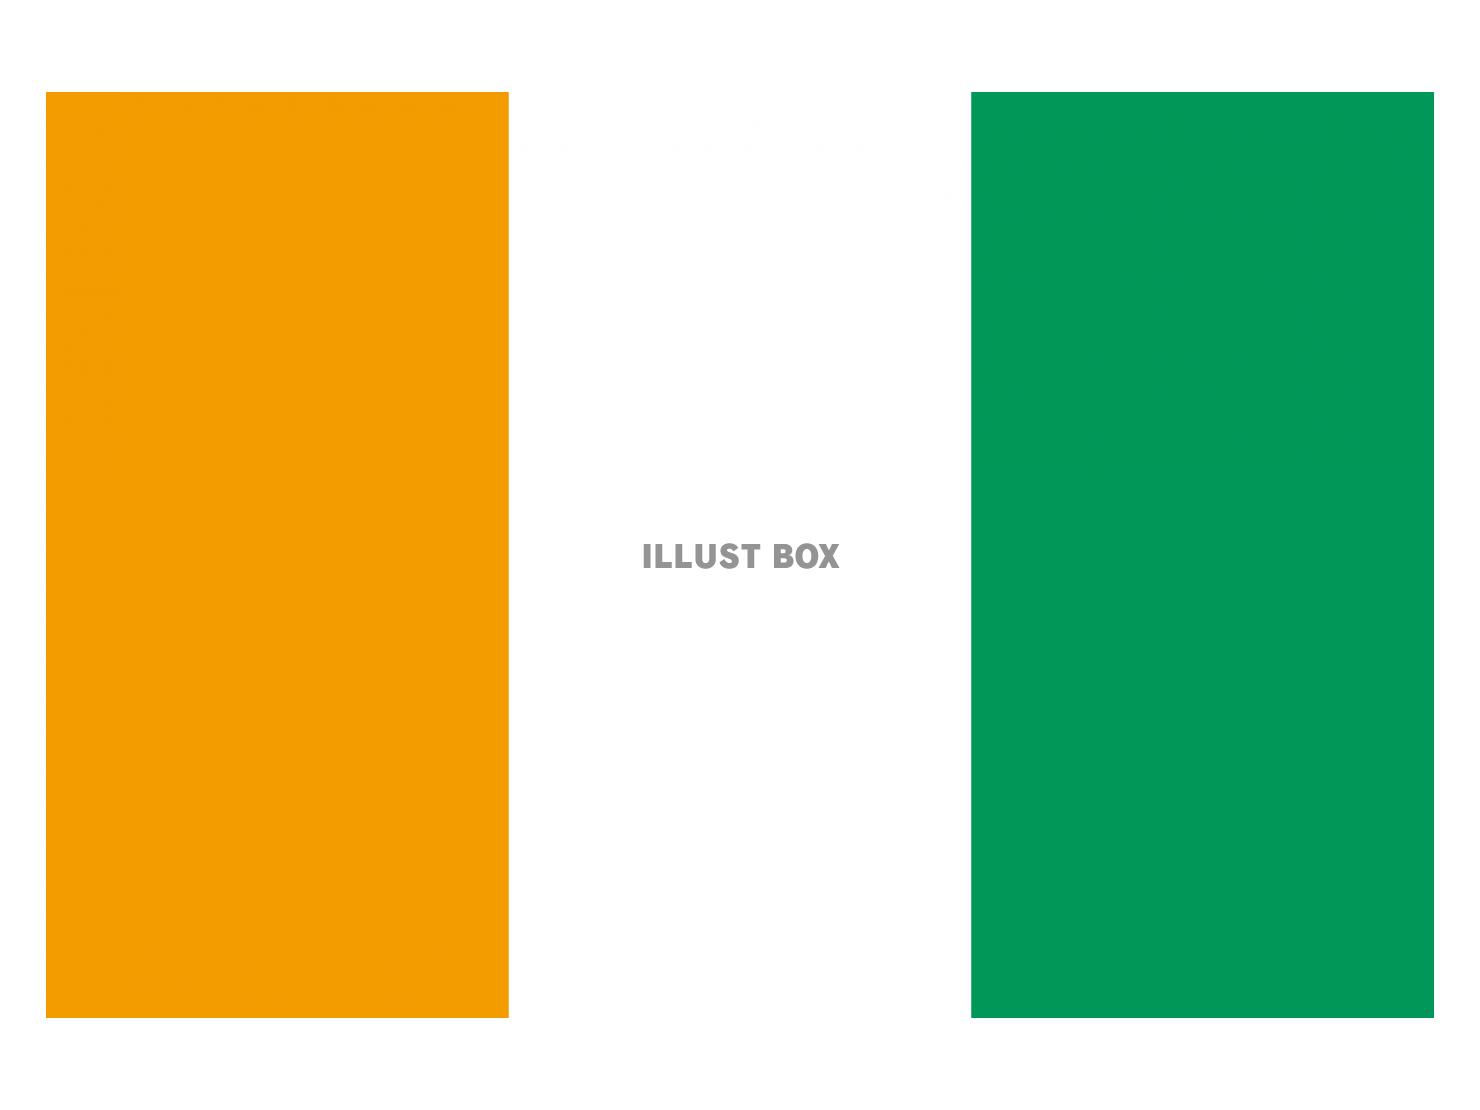 コートジボワール国旗のイラストフリー素材